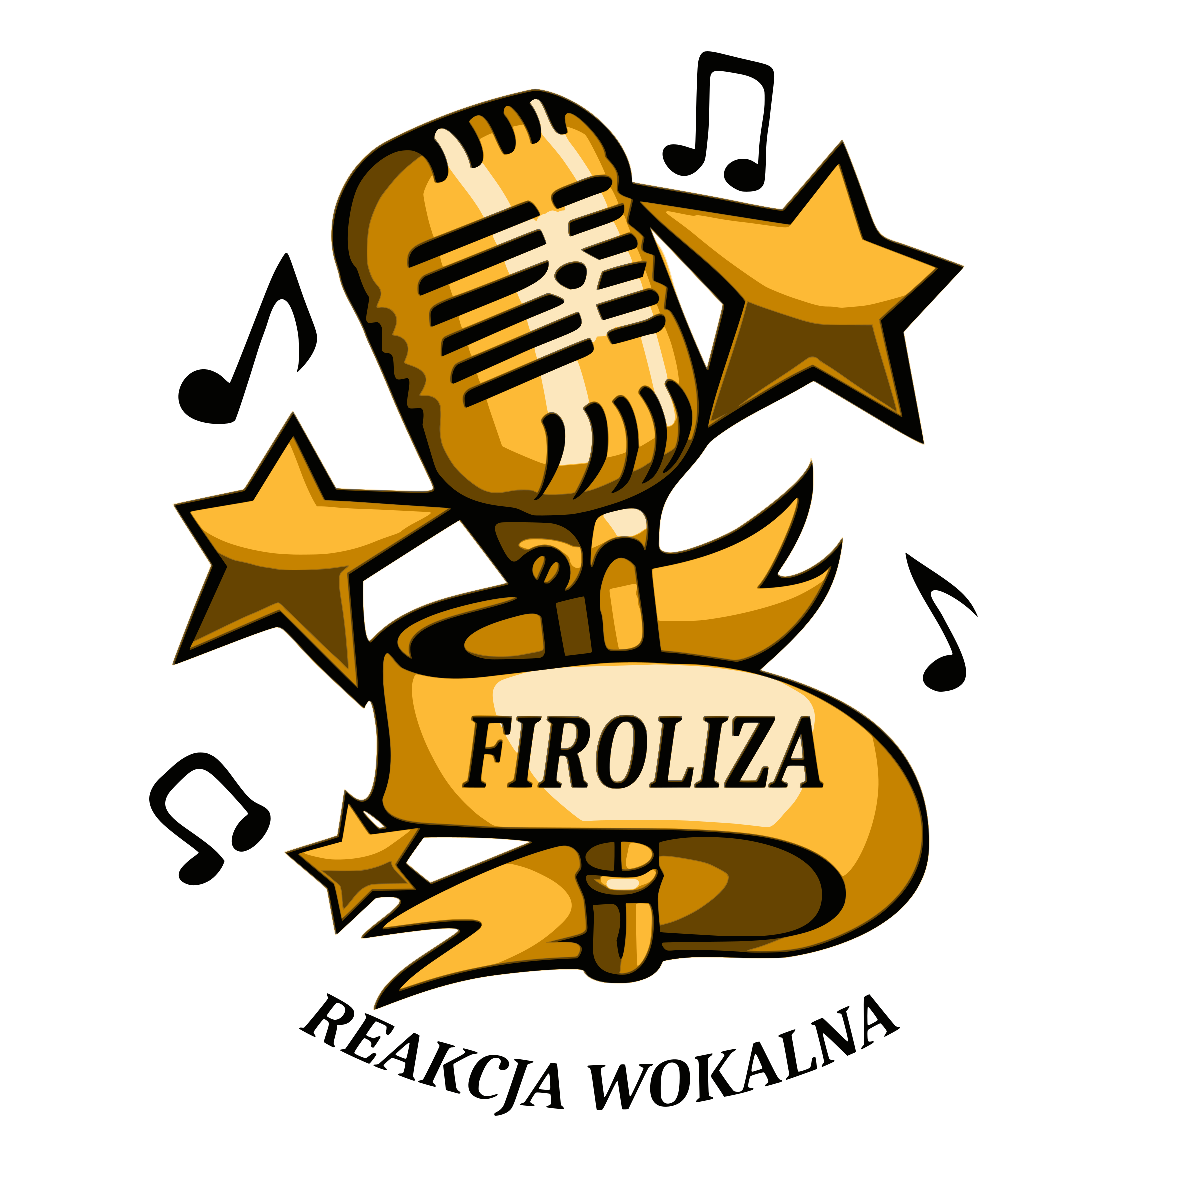 www.firolizareakcjawokalna.pl